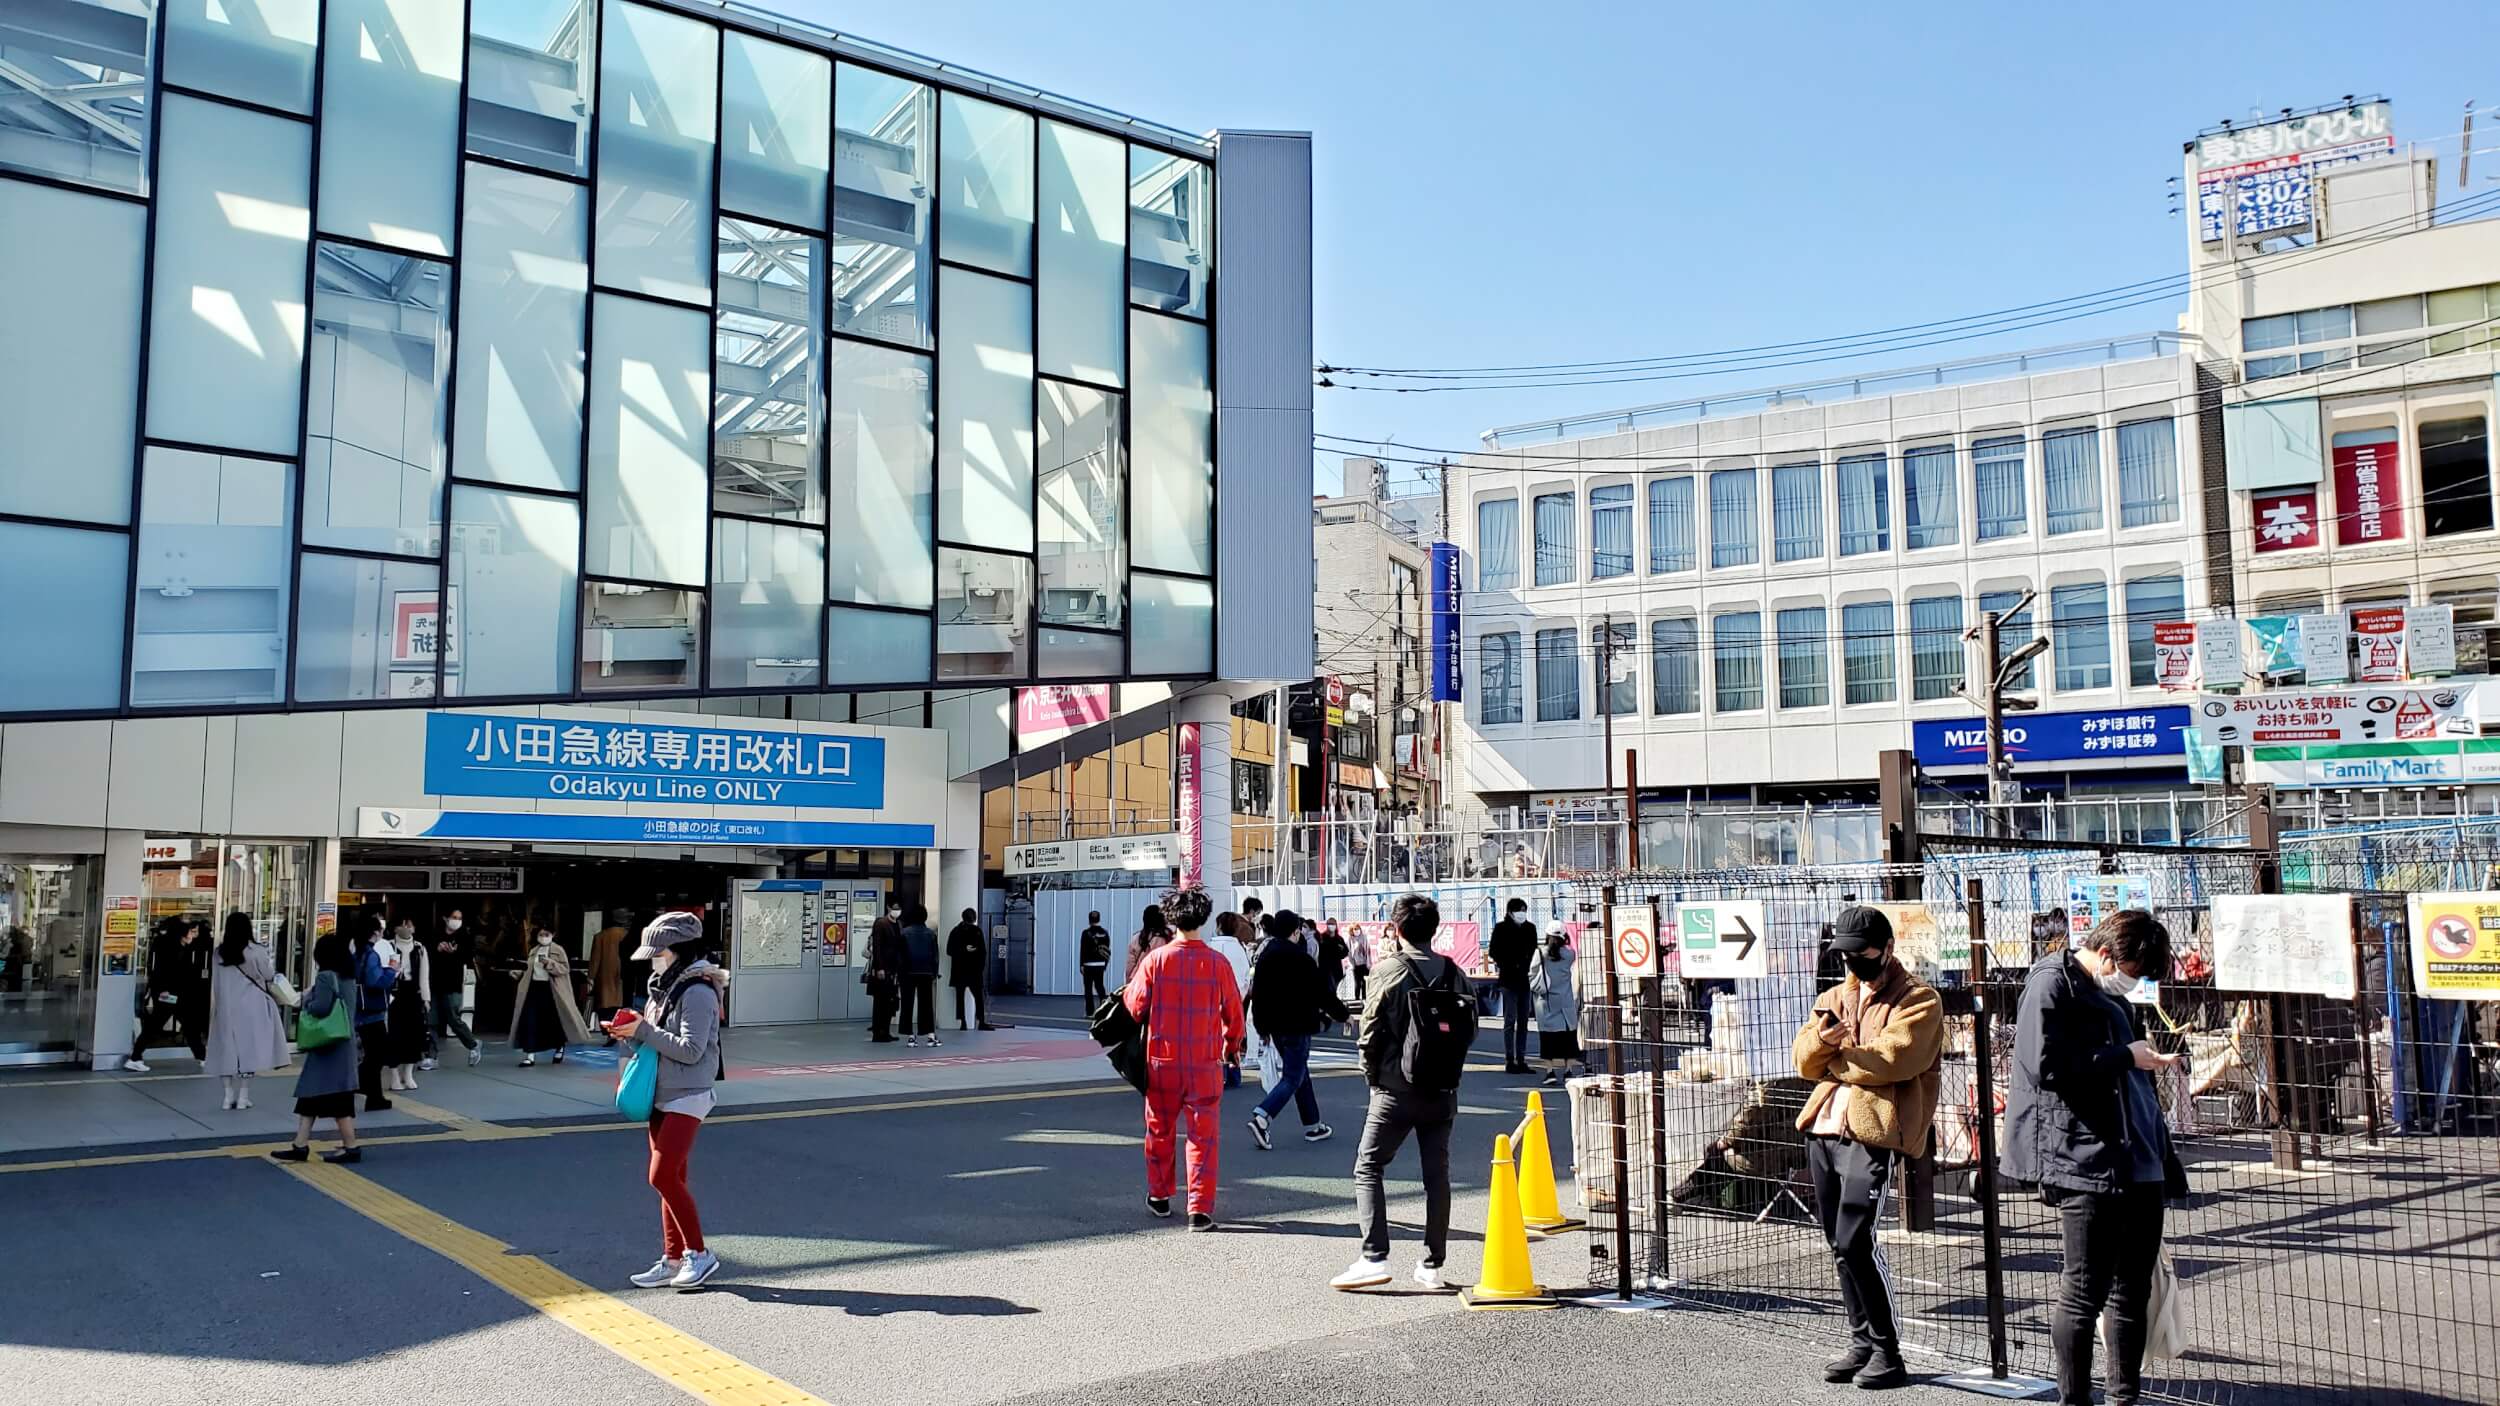 世界で最もクールな街に選ばれた下北沢 再開発事業でさらに自分らしさを見つけられる街へ 堅実な東京の再開発 賢く不動産投資運用のリビングイン